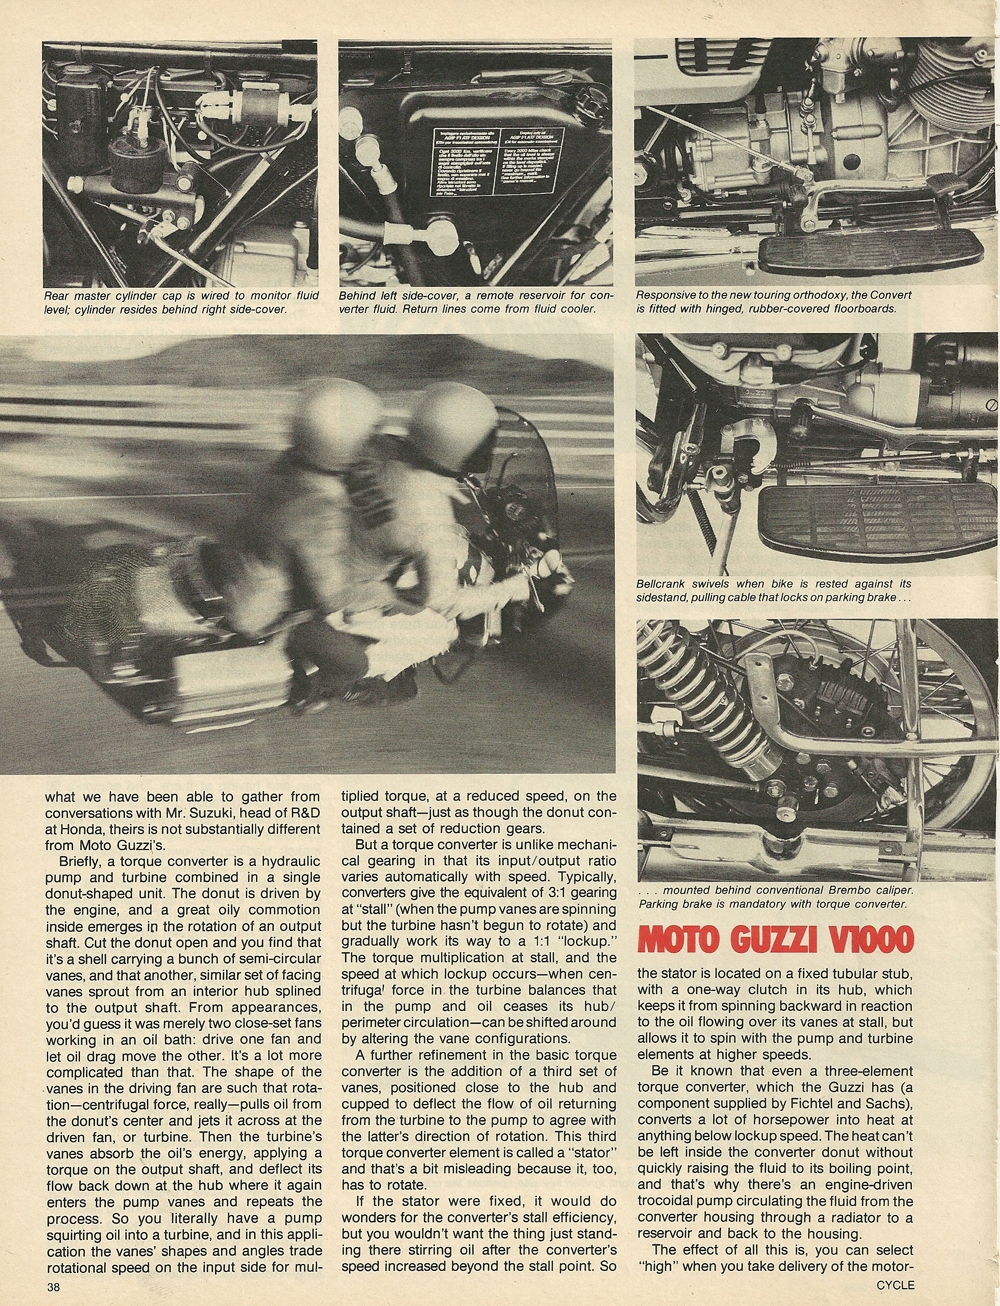 1976 Μoto Guzzi V1000 Convert